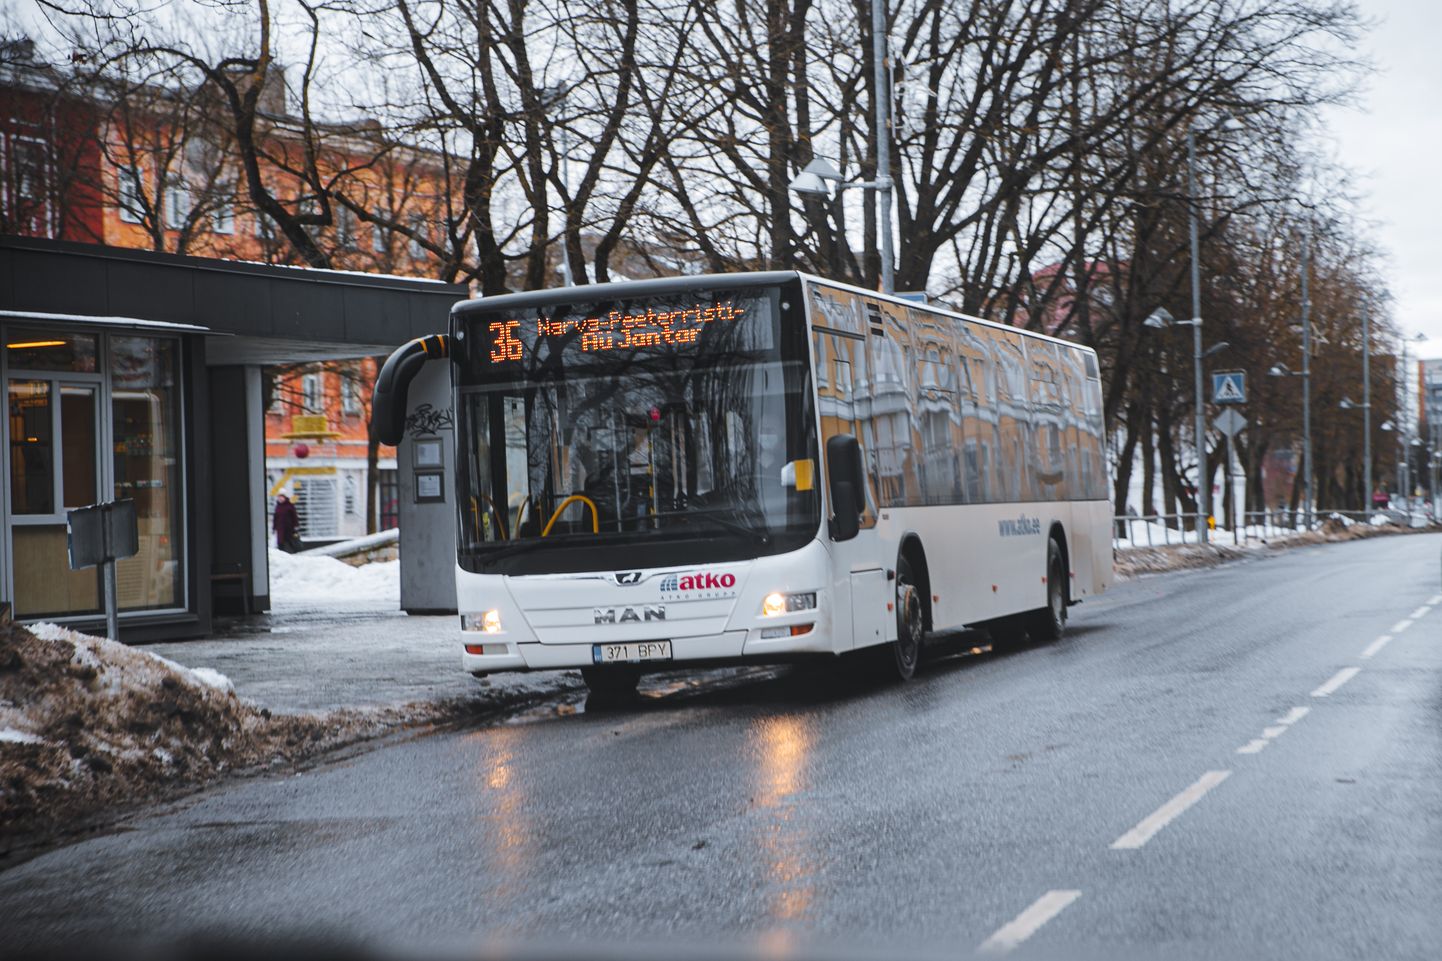 ASile ATKO Bussiliinid kuuluv buss Narva kesklinnas. Praegu ettevõte enam linnaliine ei teeninda, kuid siiani käib linnaga kohtuvaidlus saamata jäänud piletitulu üle.